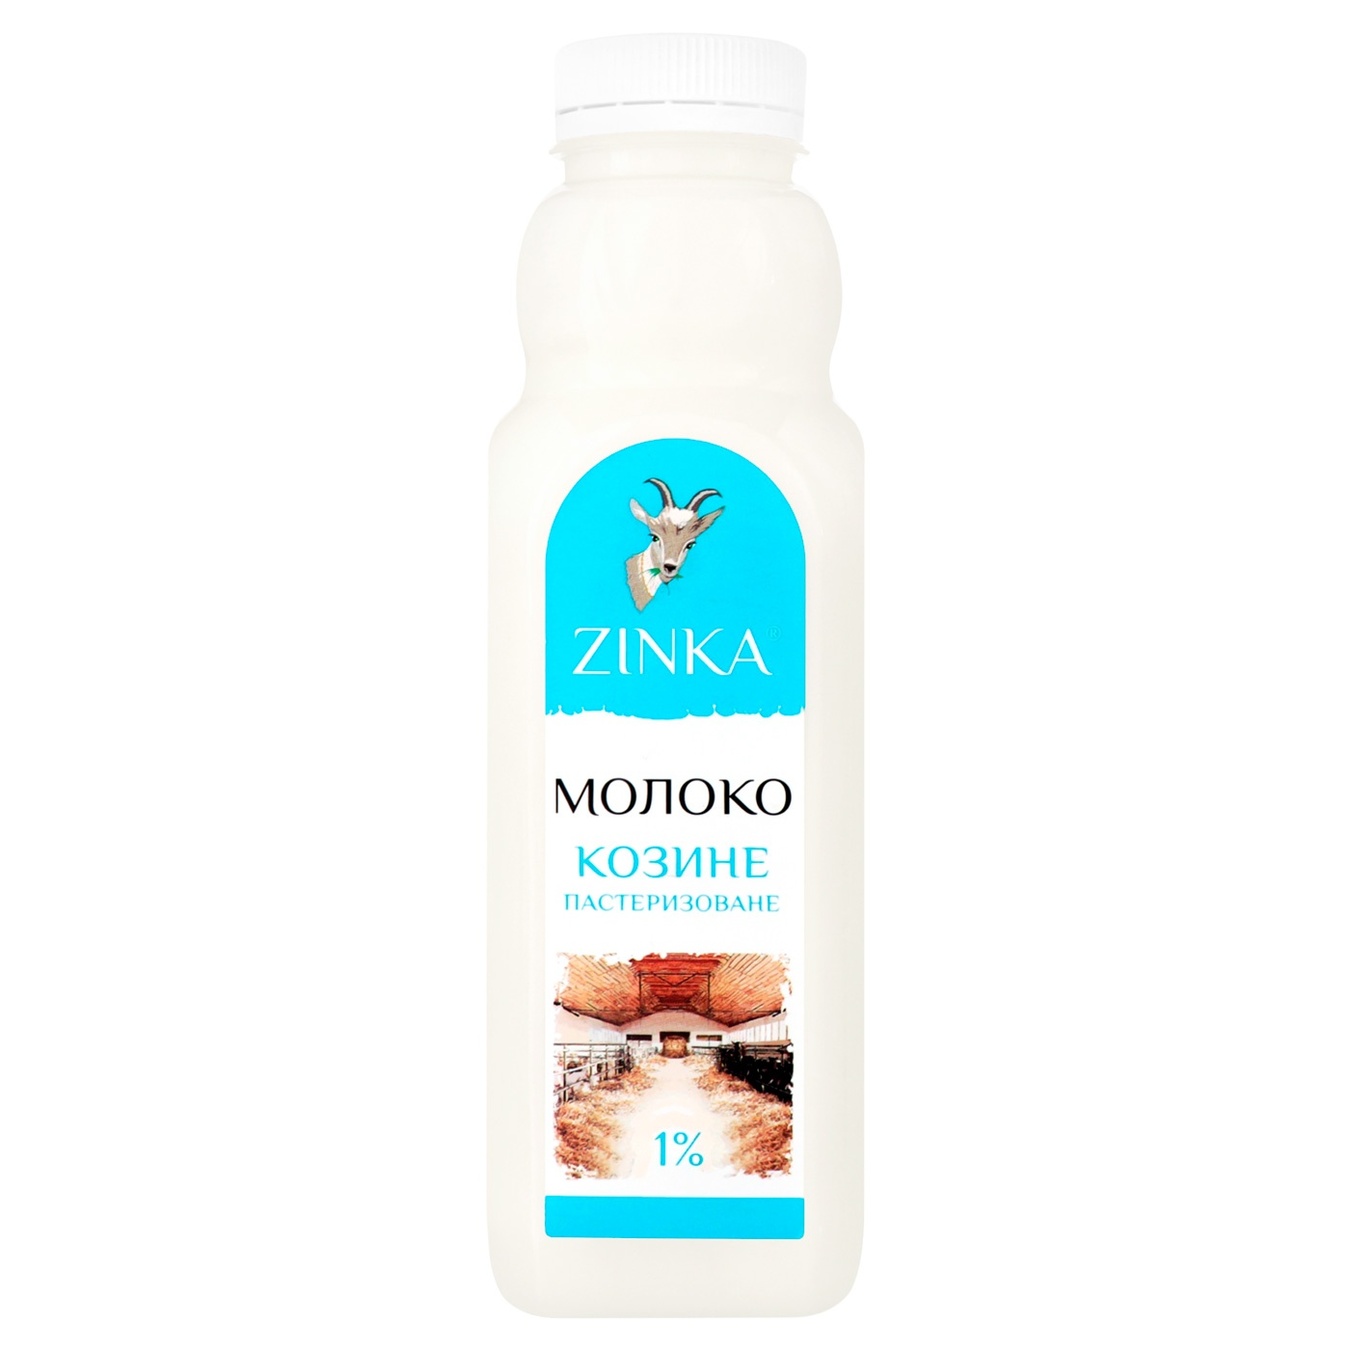 Молоко Zinka козине пастеризоване 1% 510г